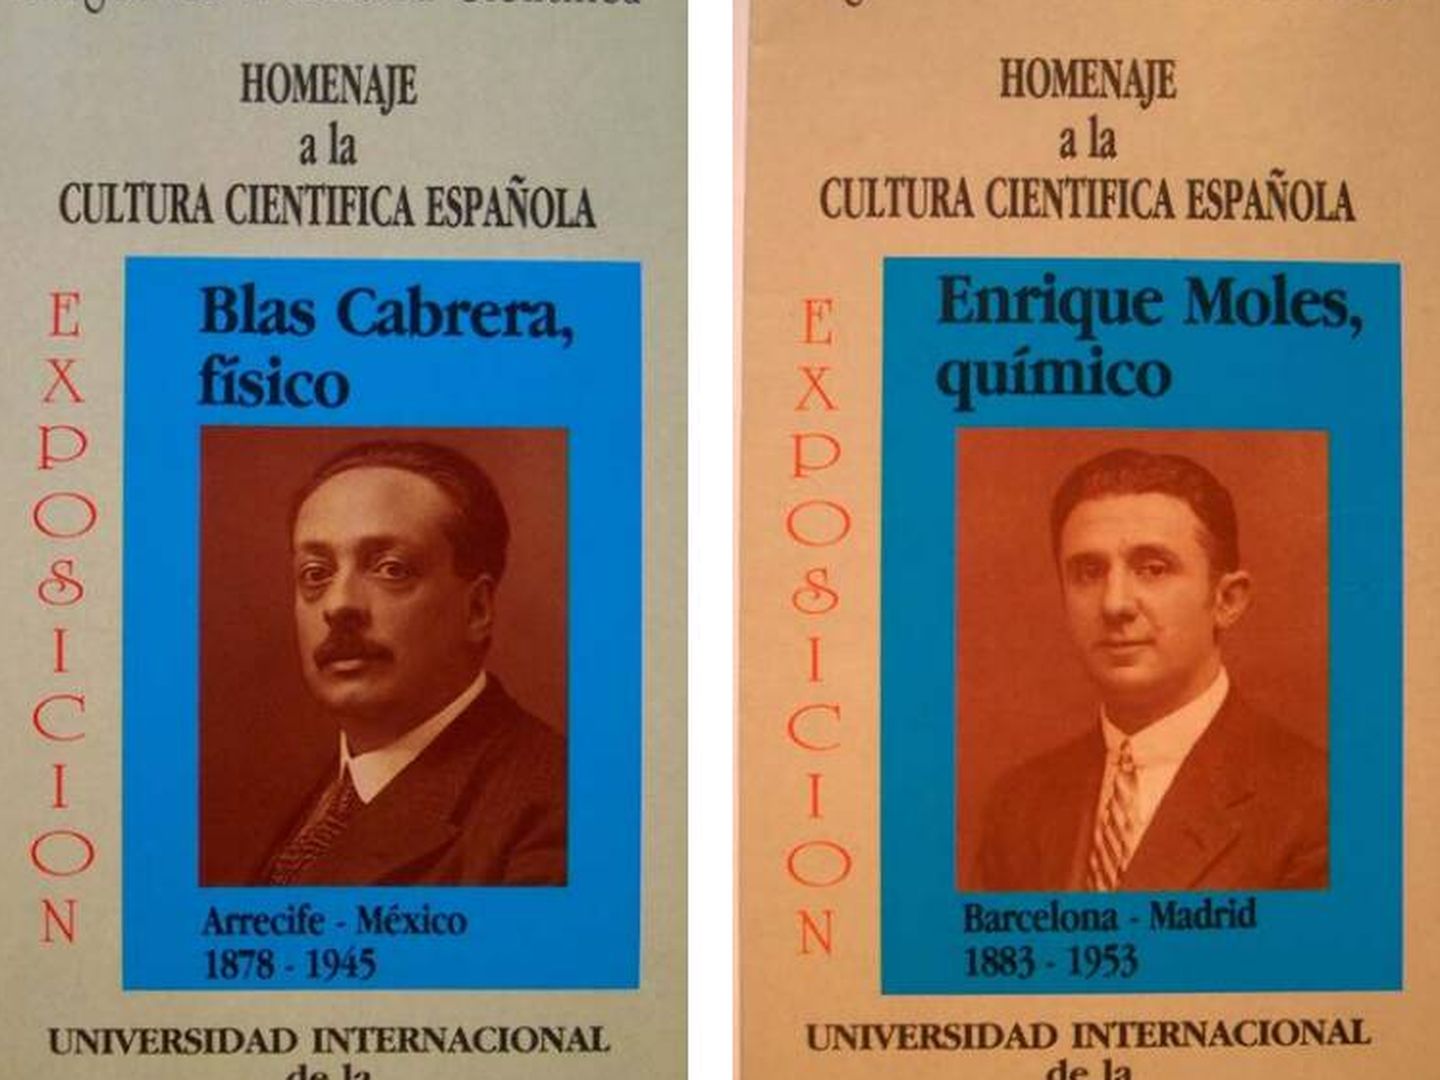 Exposiciones sobre Blas Cabrera y Enrique Moles en Málaga (1988) organizadas por la Asociación Amigos de la Cultura, dirigida por el catedrático Francisco González de Posada. (Cedida)